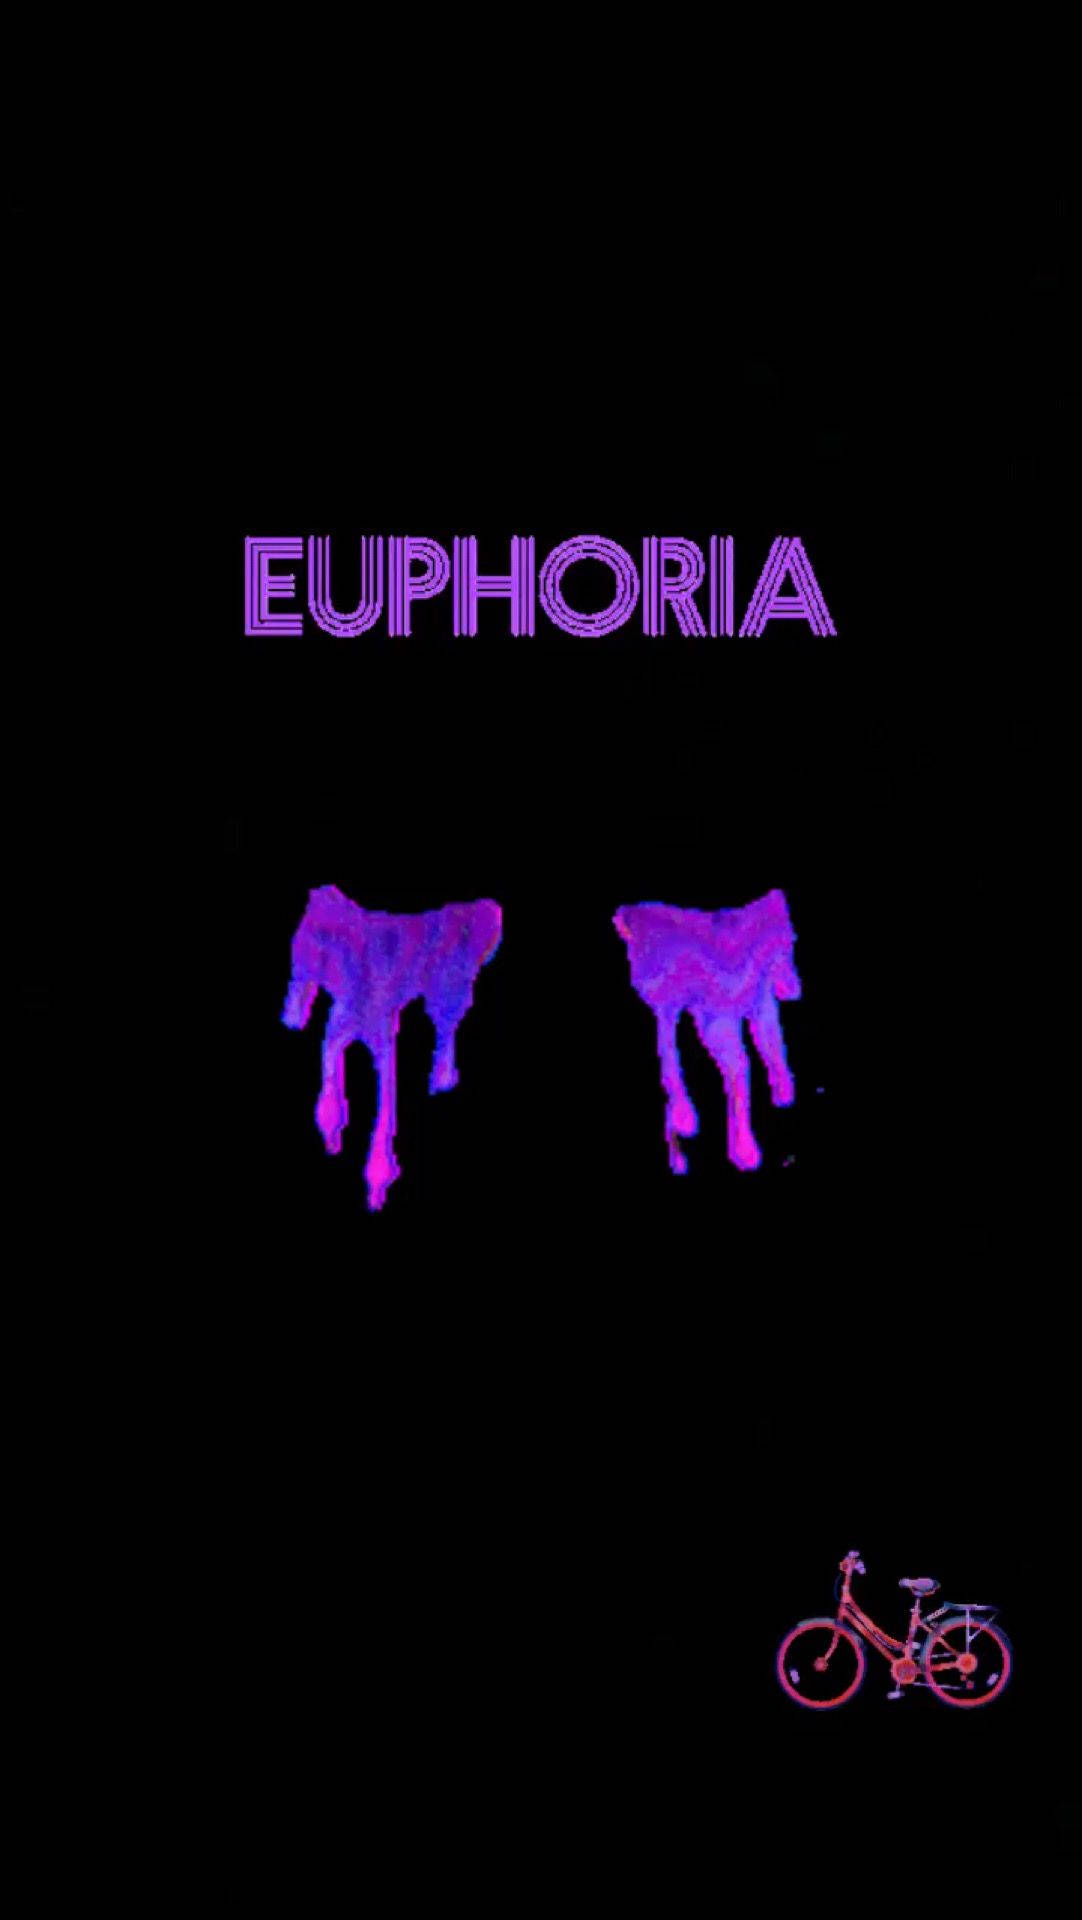 Download Euphoria Purple Tears Wallpaper